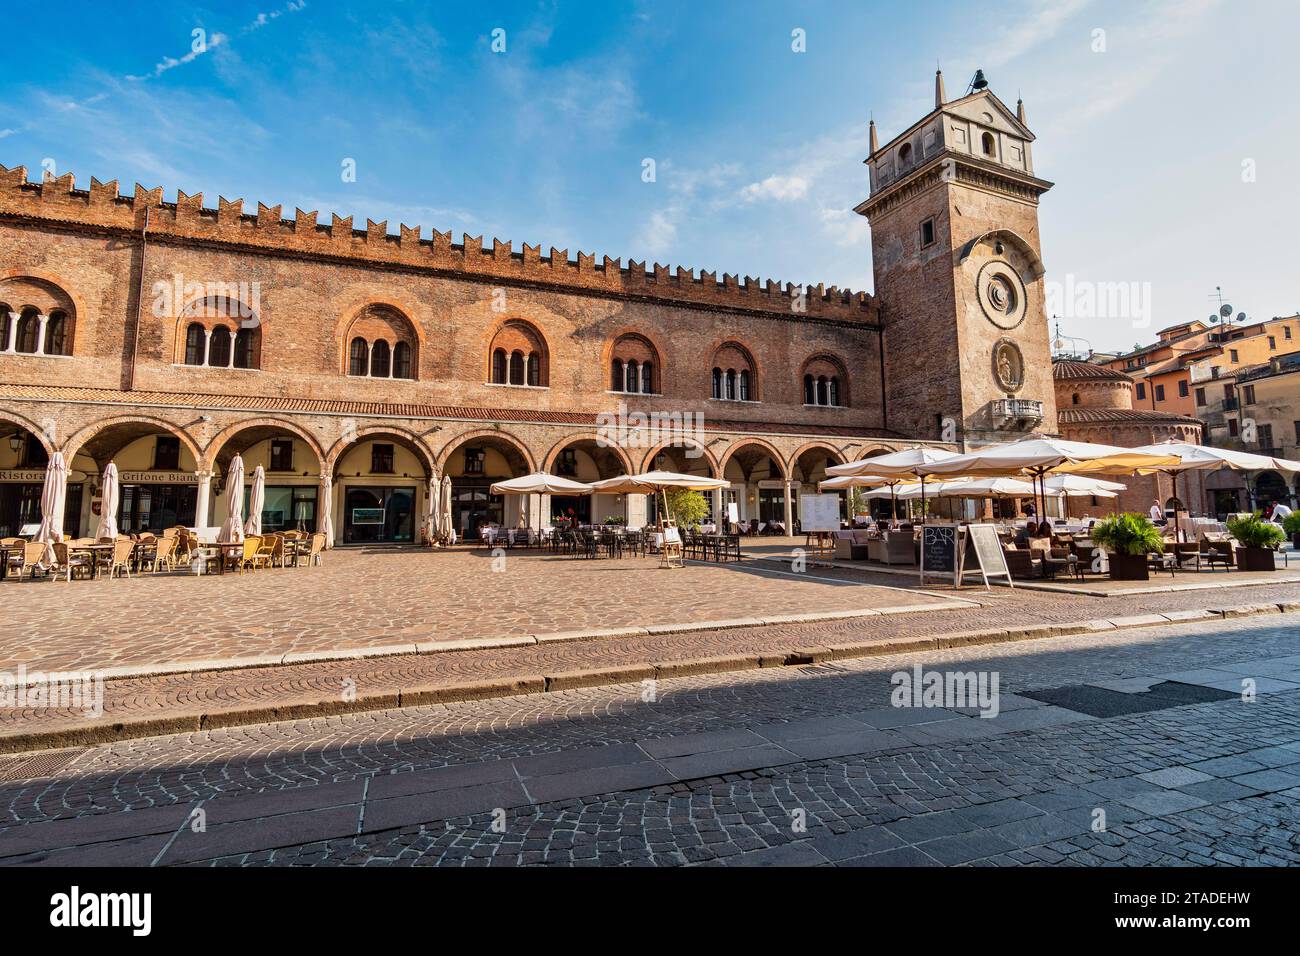 Torre dell'Orologio, Piazza delle Erbe, Mantua, Lombardy, Italy Stock Photo